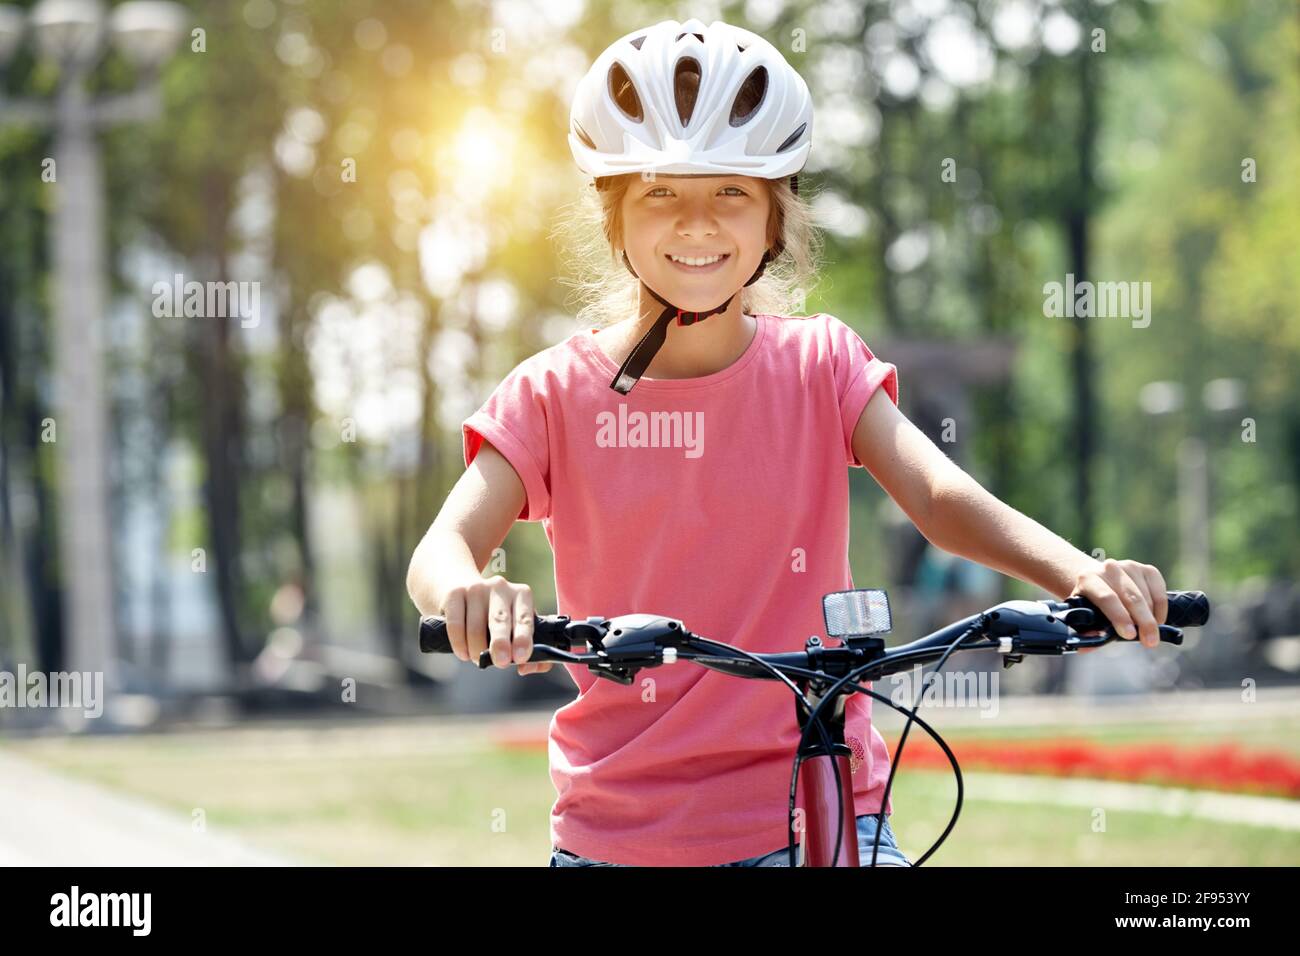 Mädchen mit Helm und Fahrrad im Stadtpark. Schaut auf die Kamera und lächelt. Stockfoto